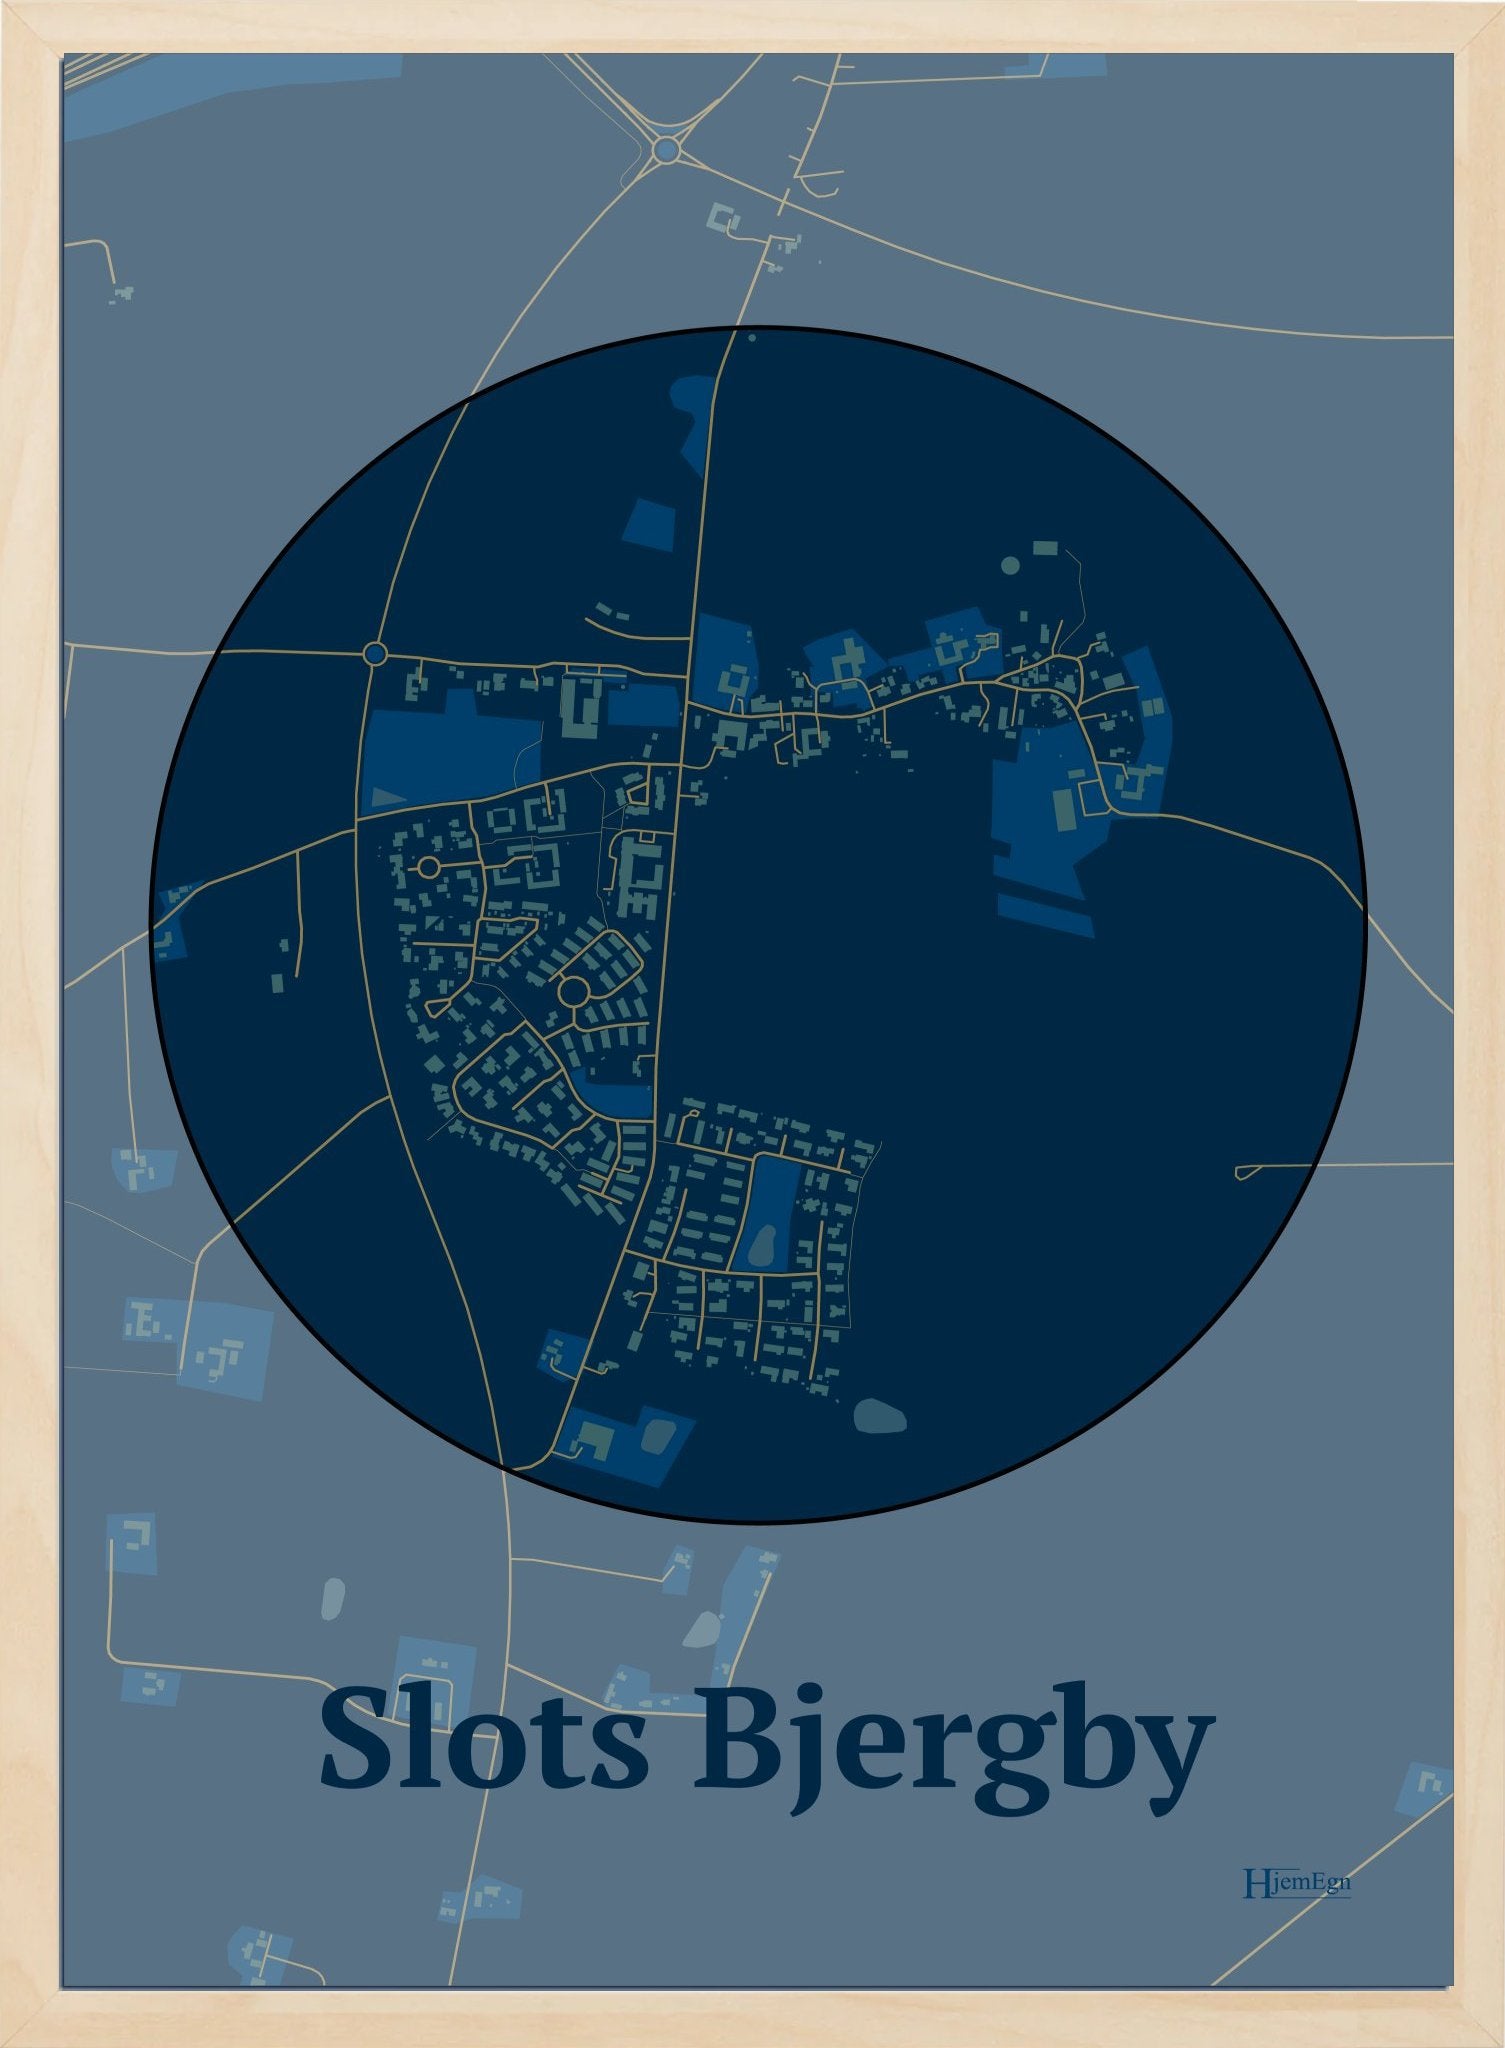 Slots Bjergby plakat i farve mørk blå og HjemEgn.dk design centrum. Design bykort for Slots Bjergby